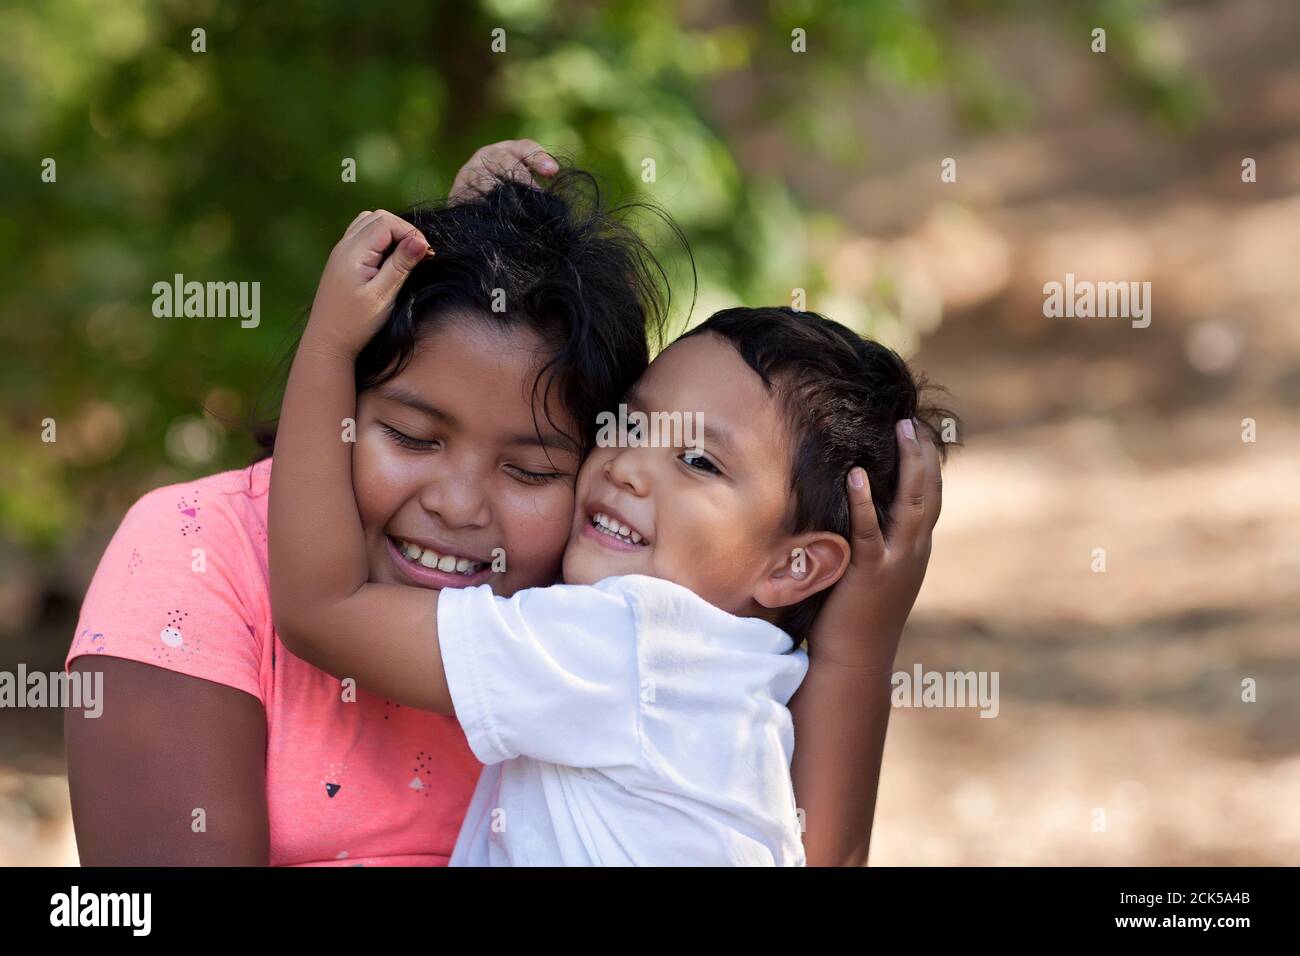 Hermano pequeño está abrazando a su hermana mayor con sus brazos alrededor de su cara y ambos están sonriendo en el ambiente al aire libre. Foto de stock